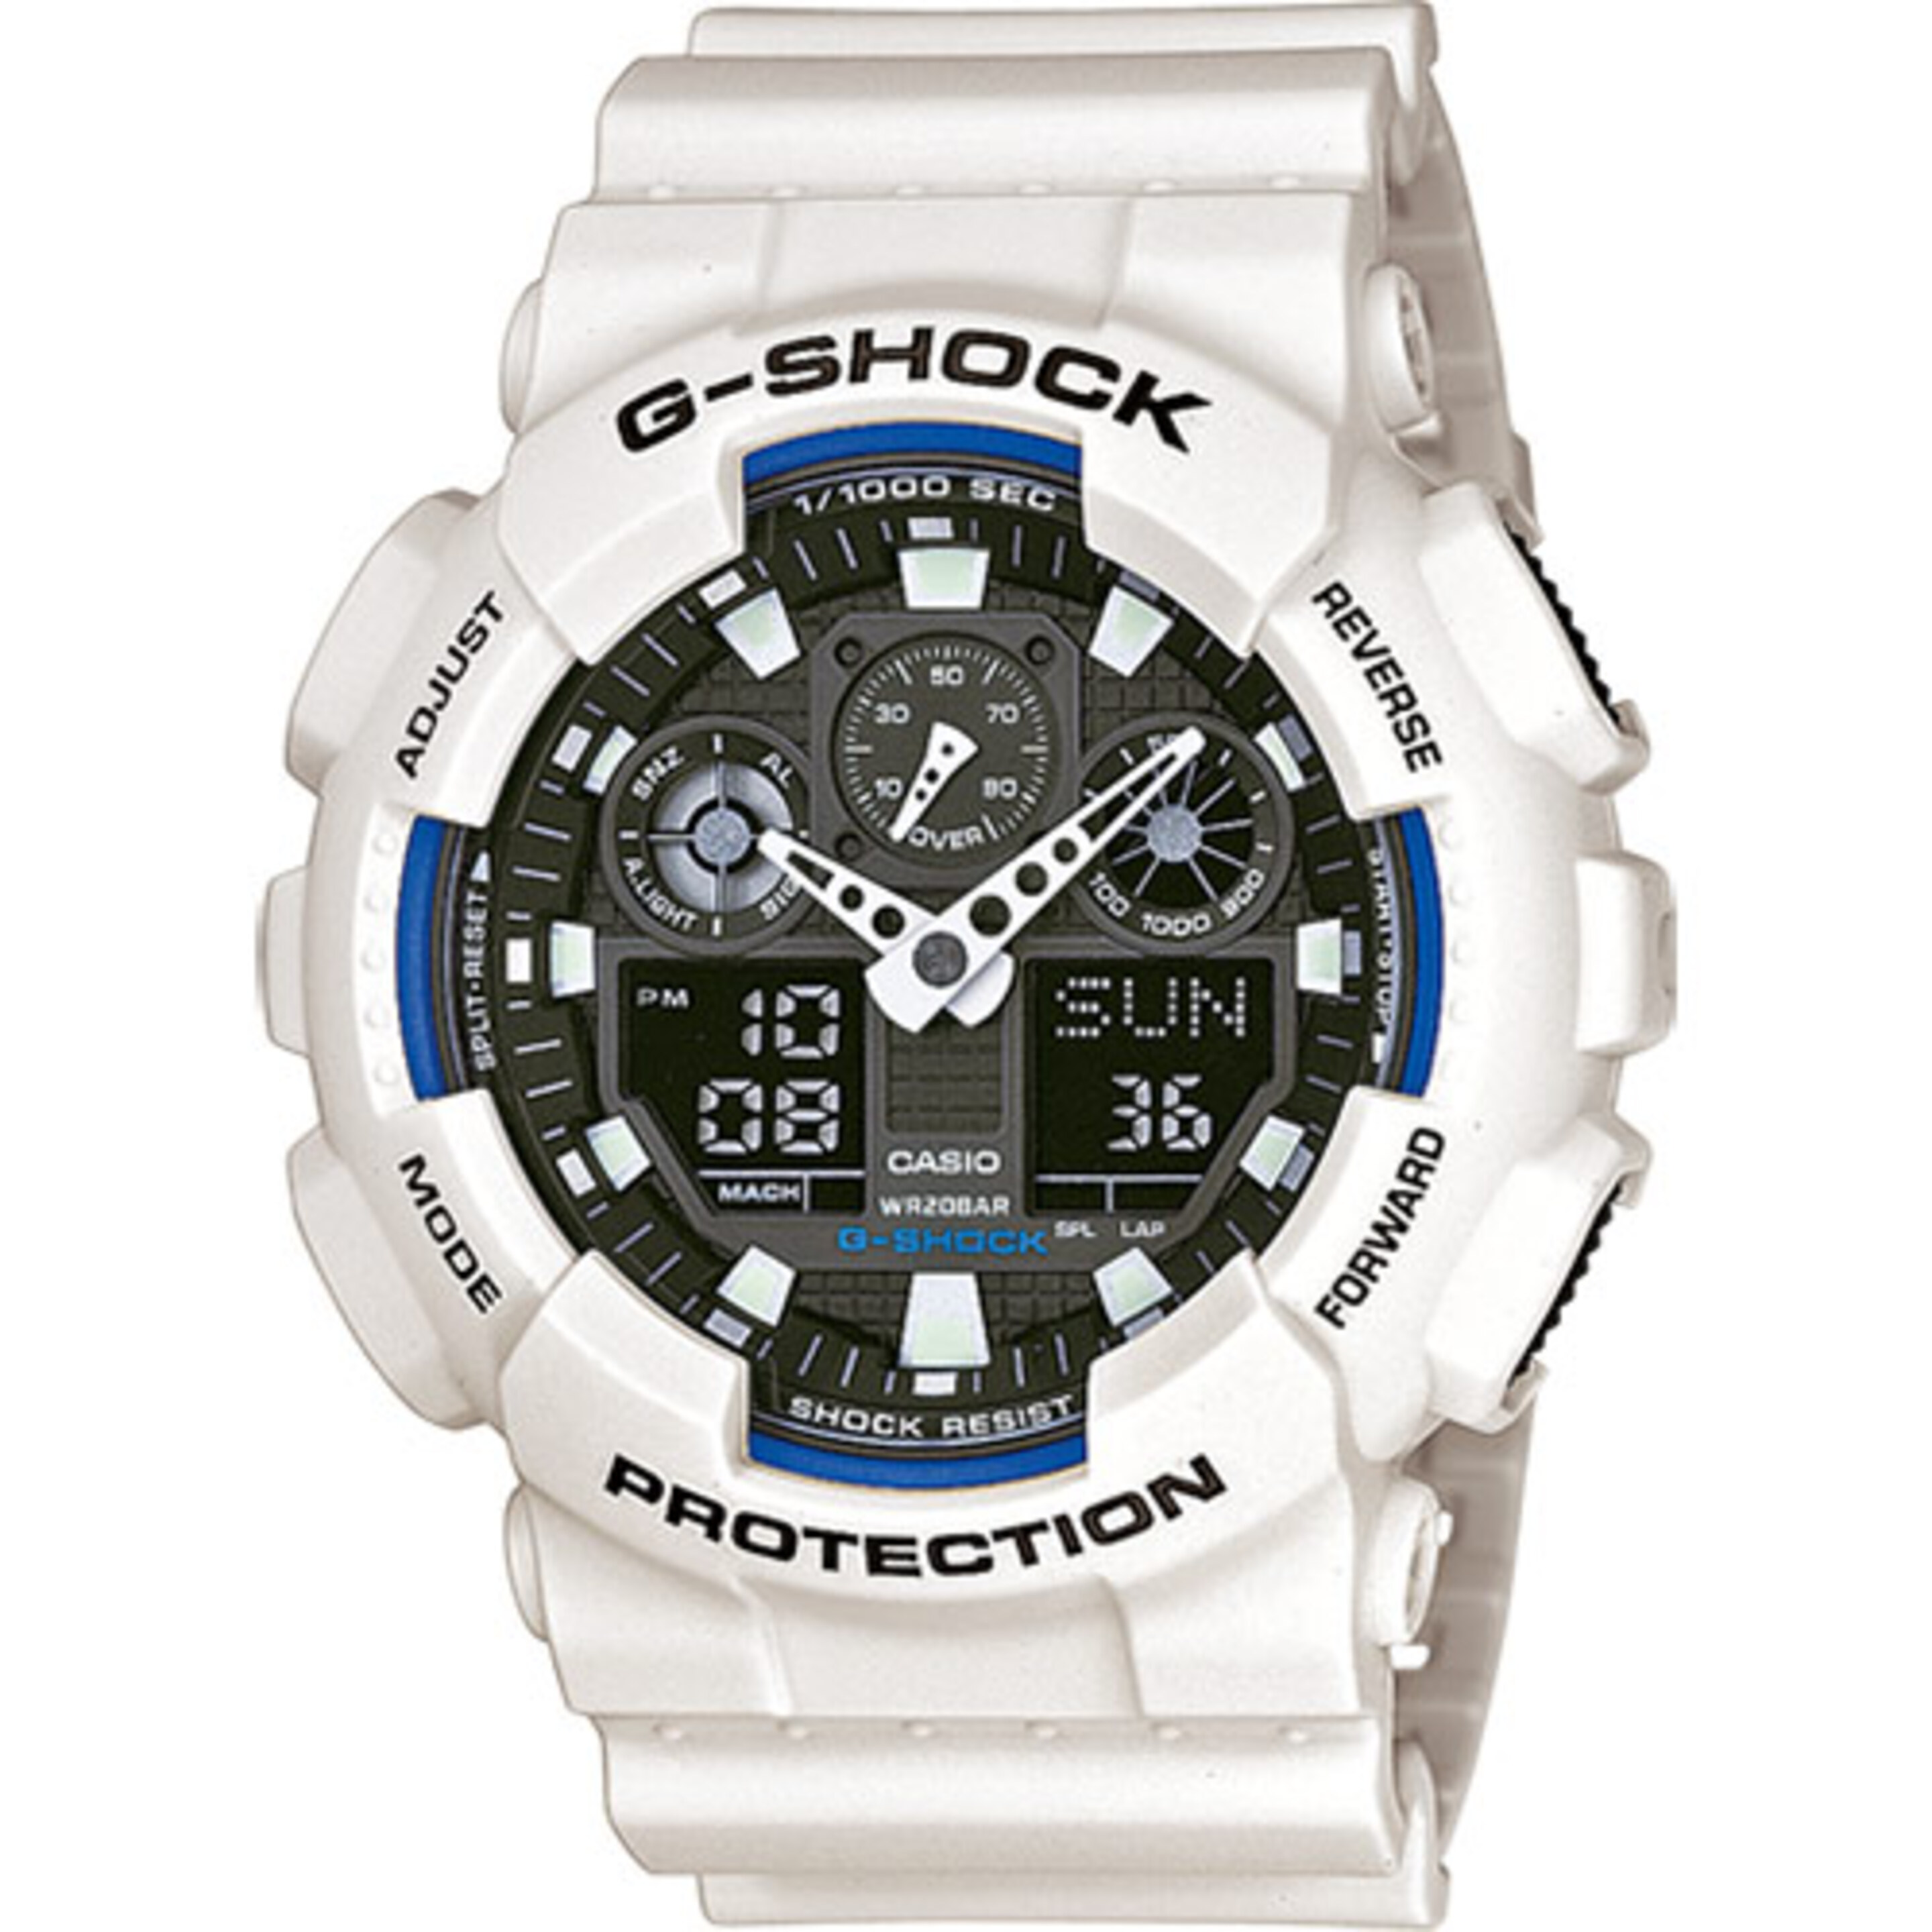 Reloj Casio G-shock Ga-100b-7aer - blanco - Reloj Deportivo  MKP